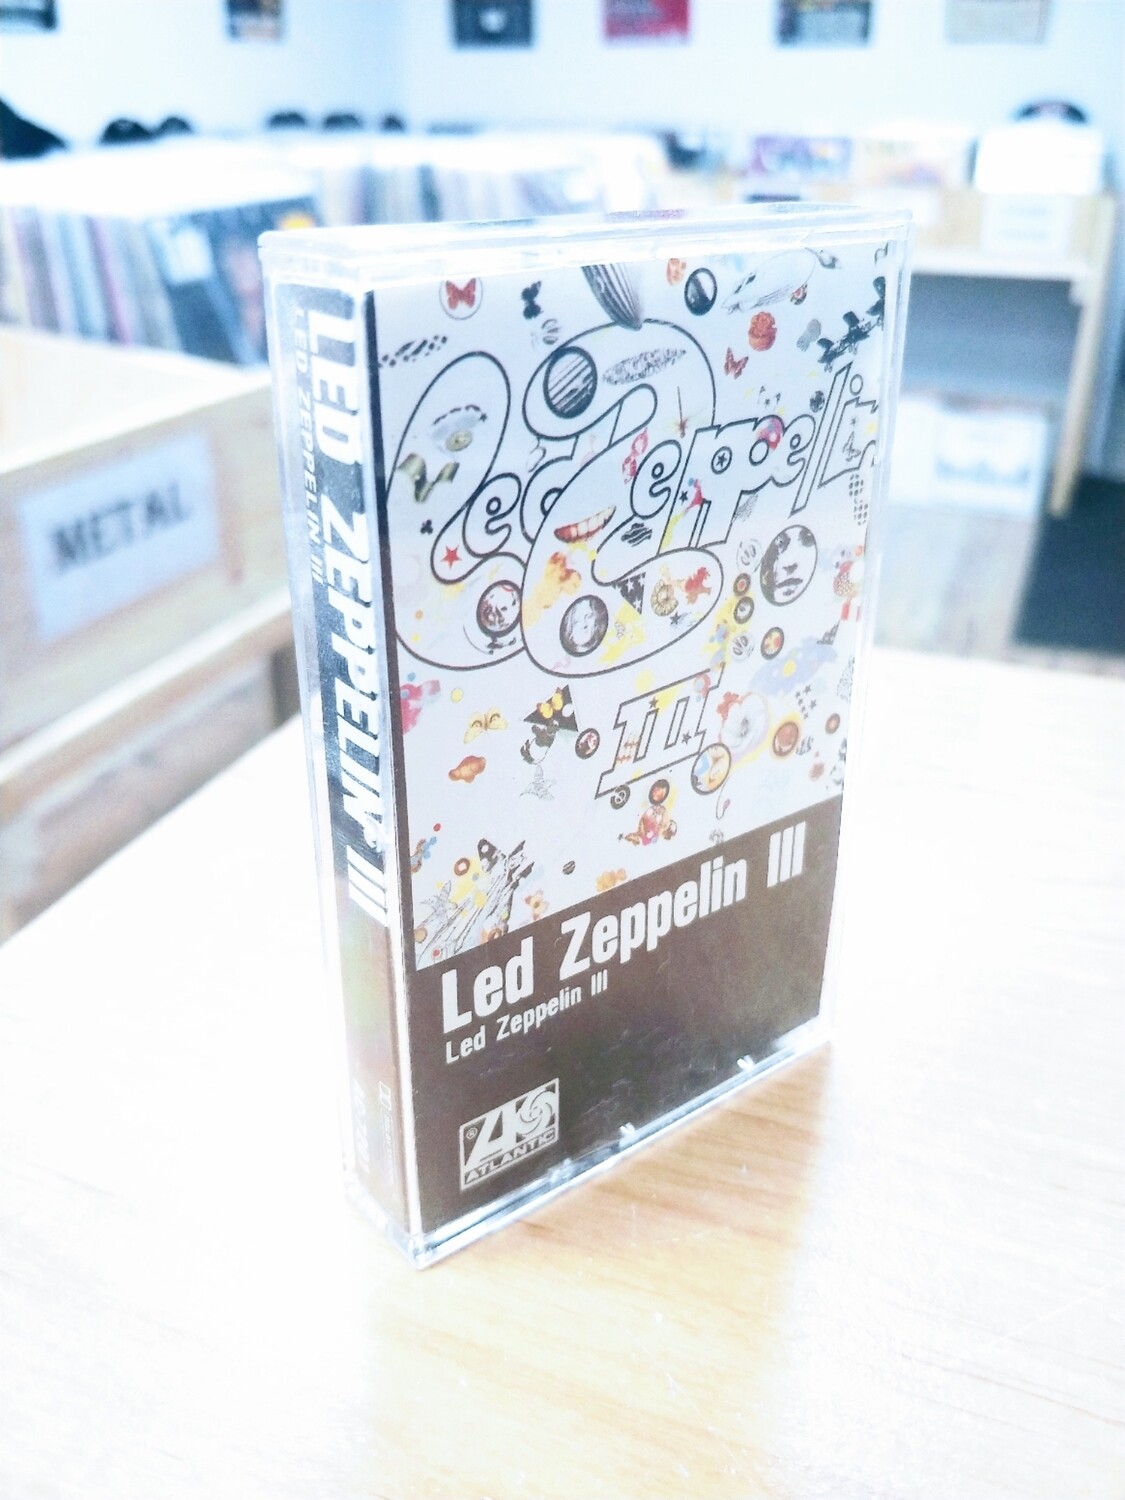 Led Zeppelin - Led Zeppelin III (CASSETTE)